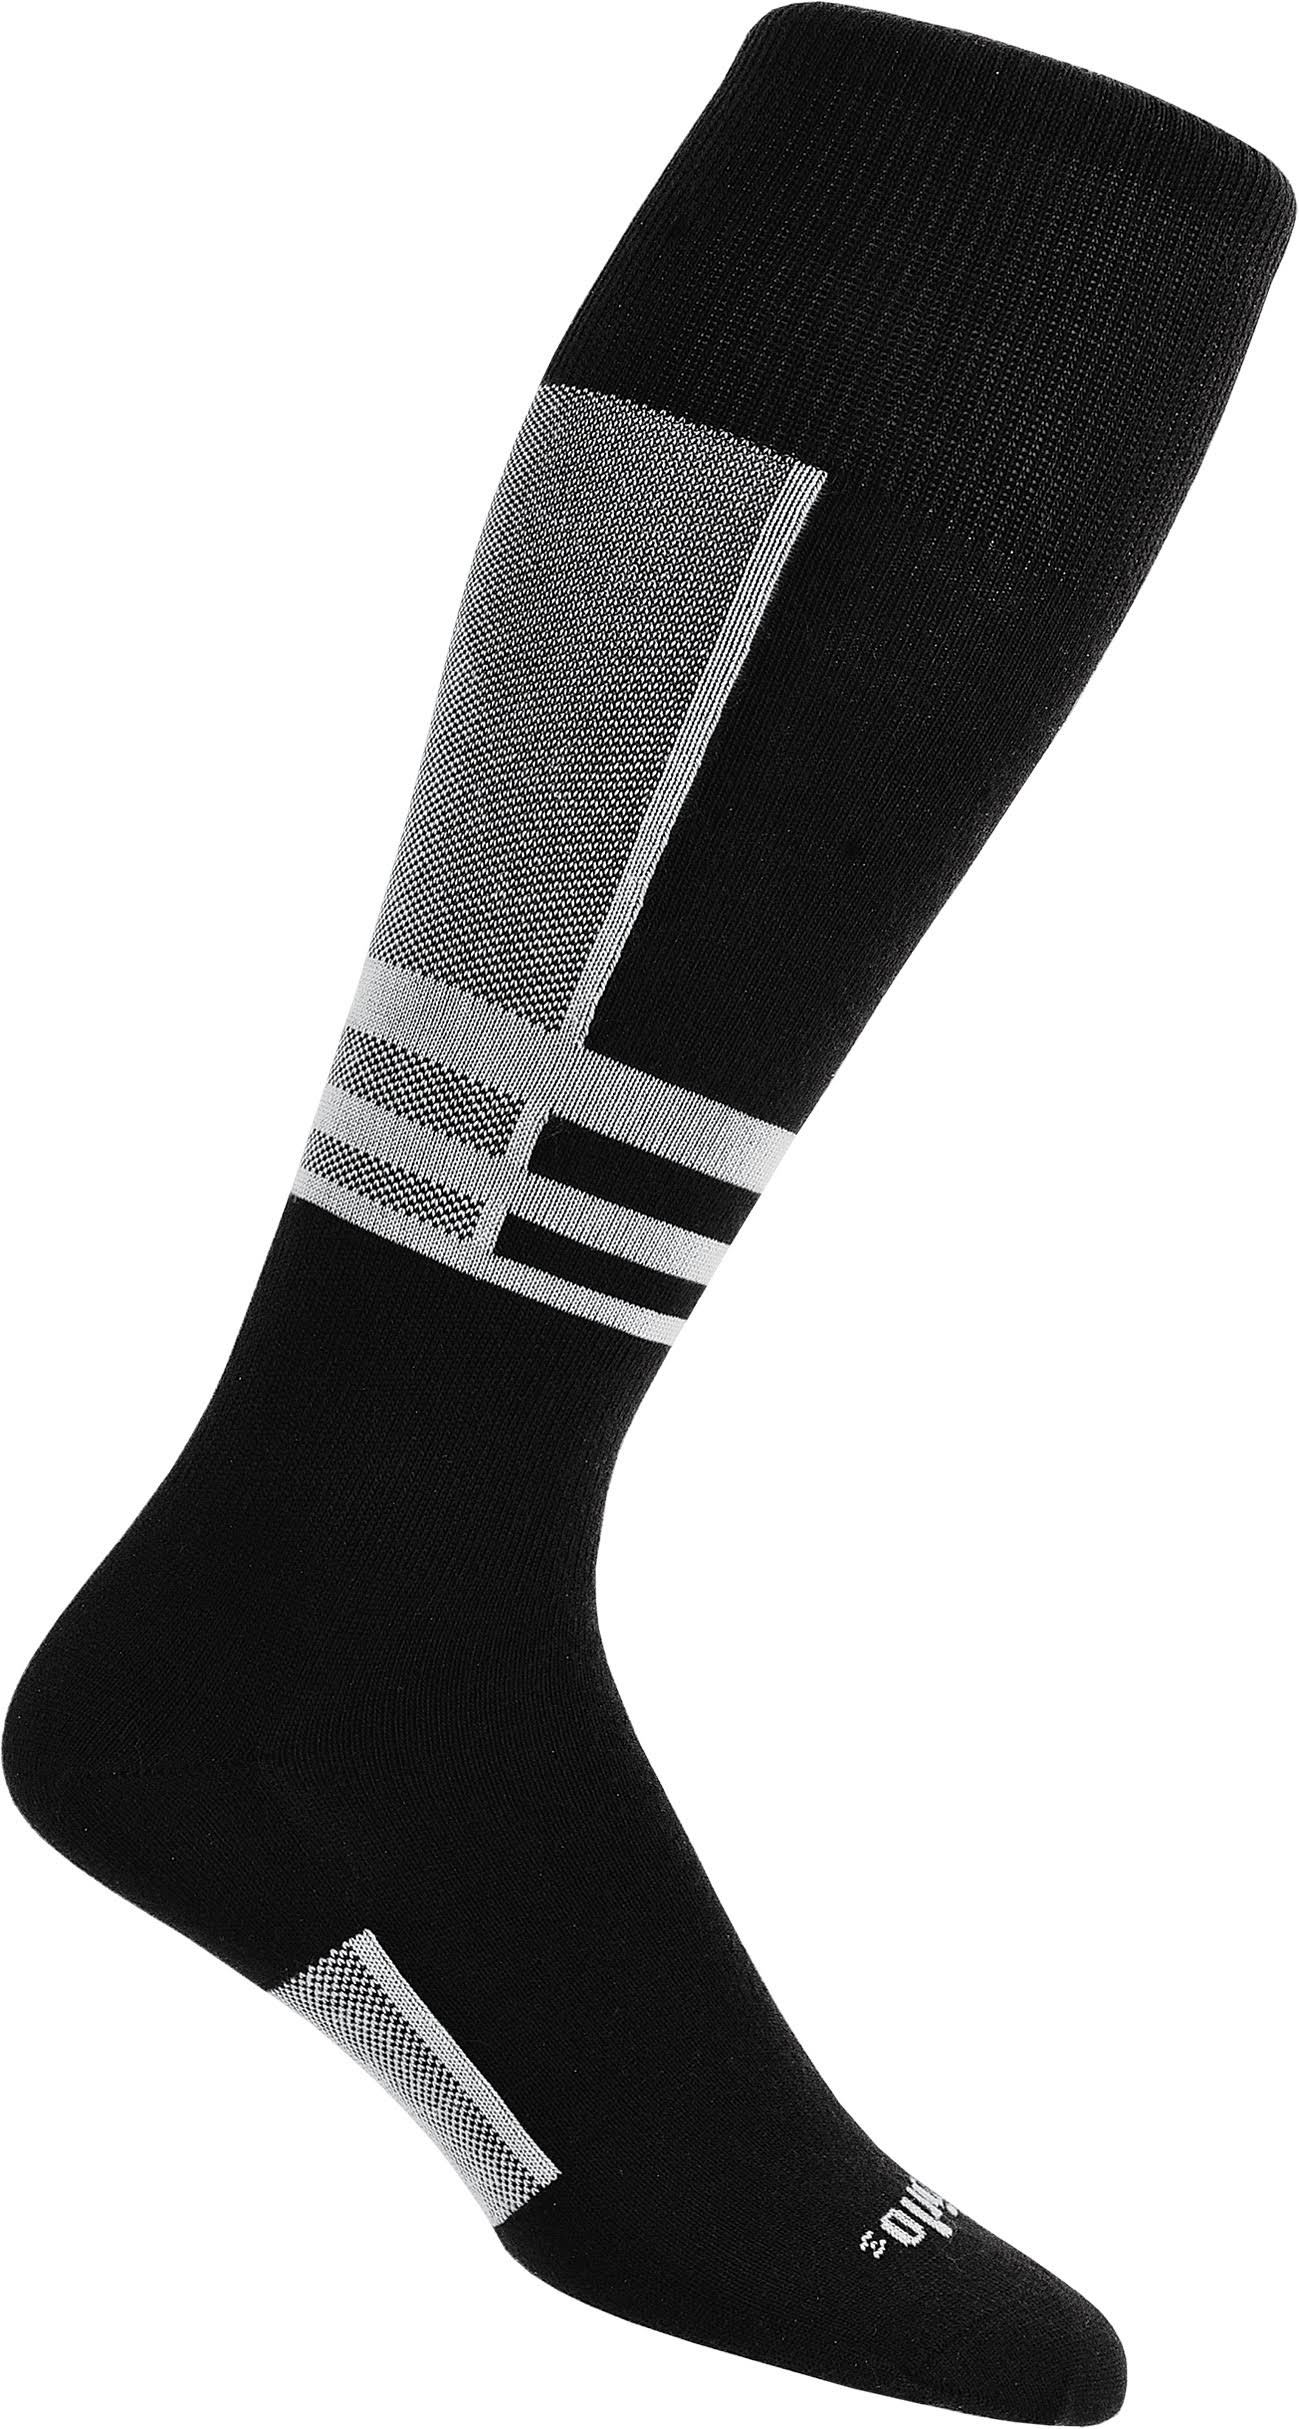 Thorlo Ultra Light Ski Liner Sock - White/Black, 11.5-13